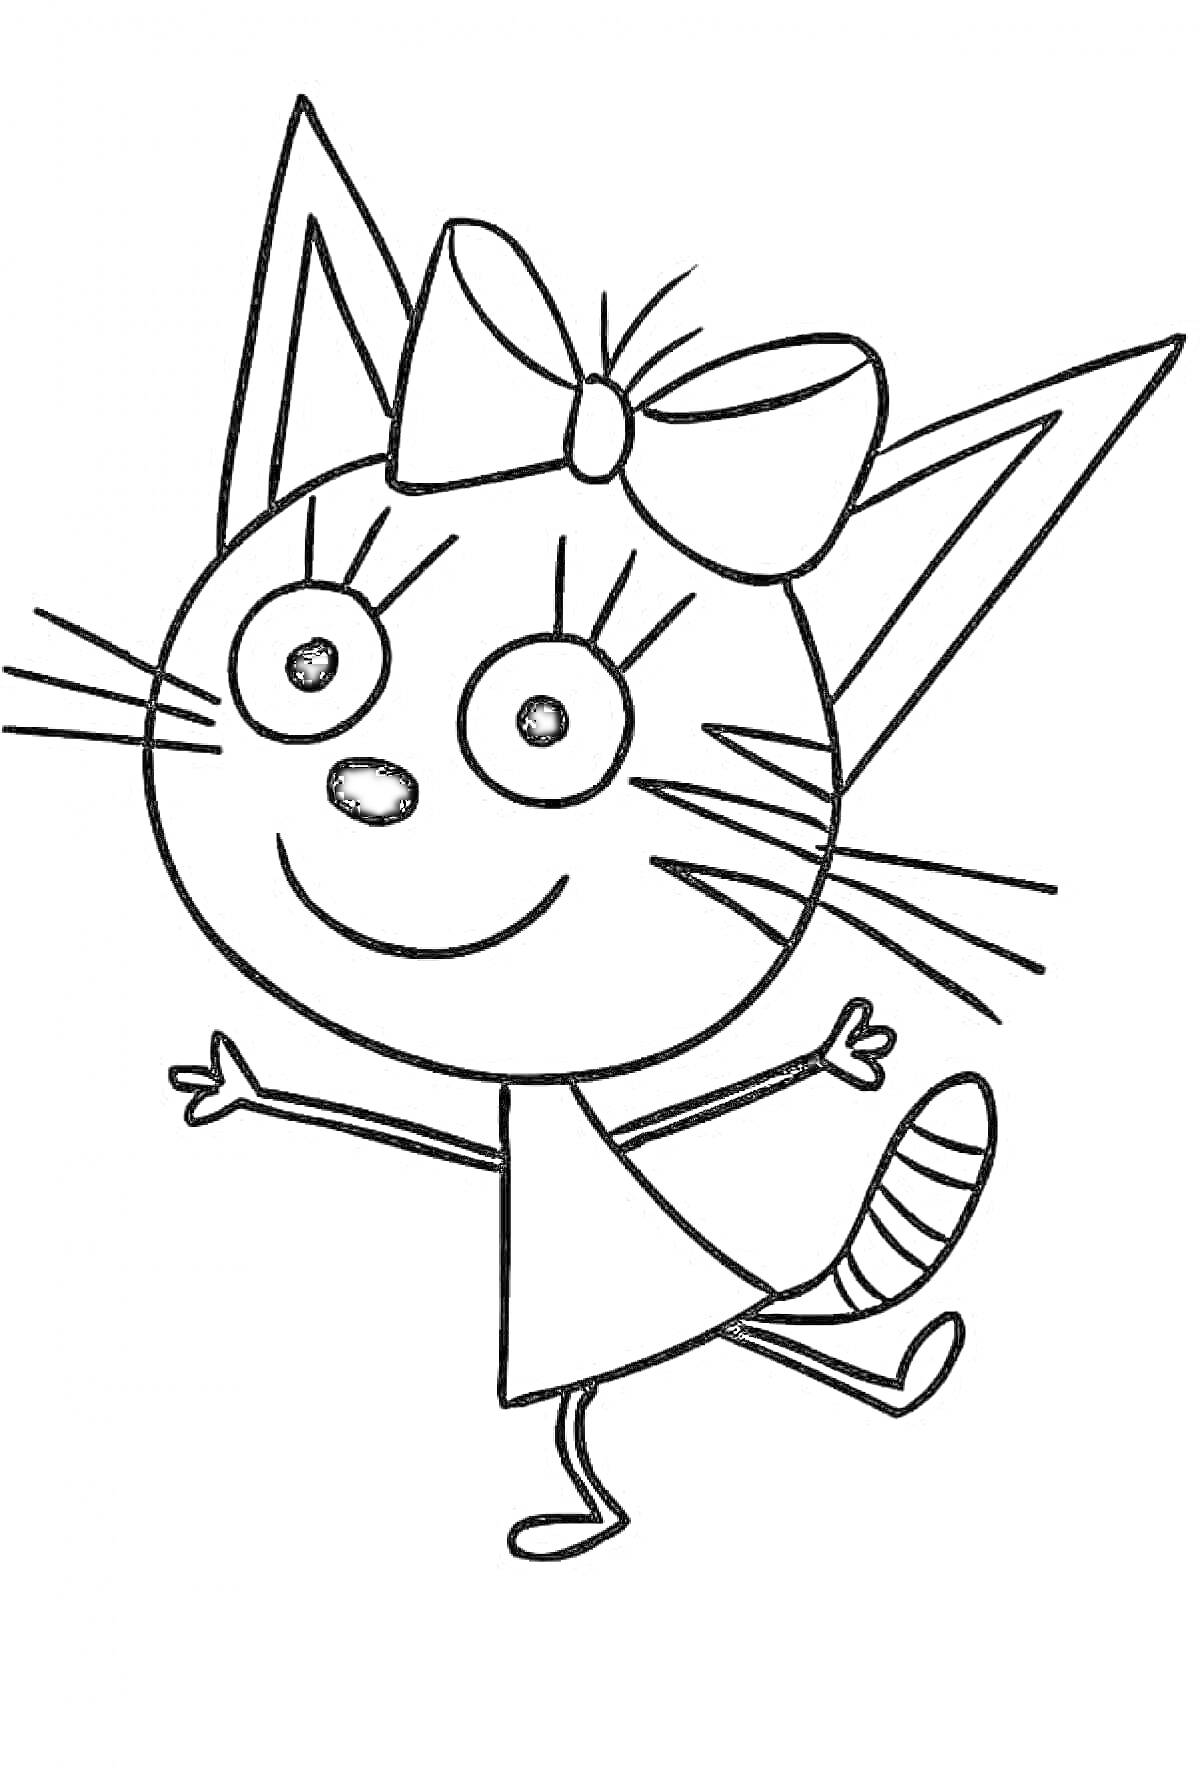 Раскраска Кошка с бантиком на голове, в платье, с одним поднятым хвостом